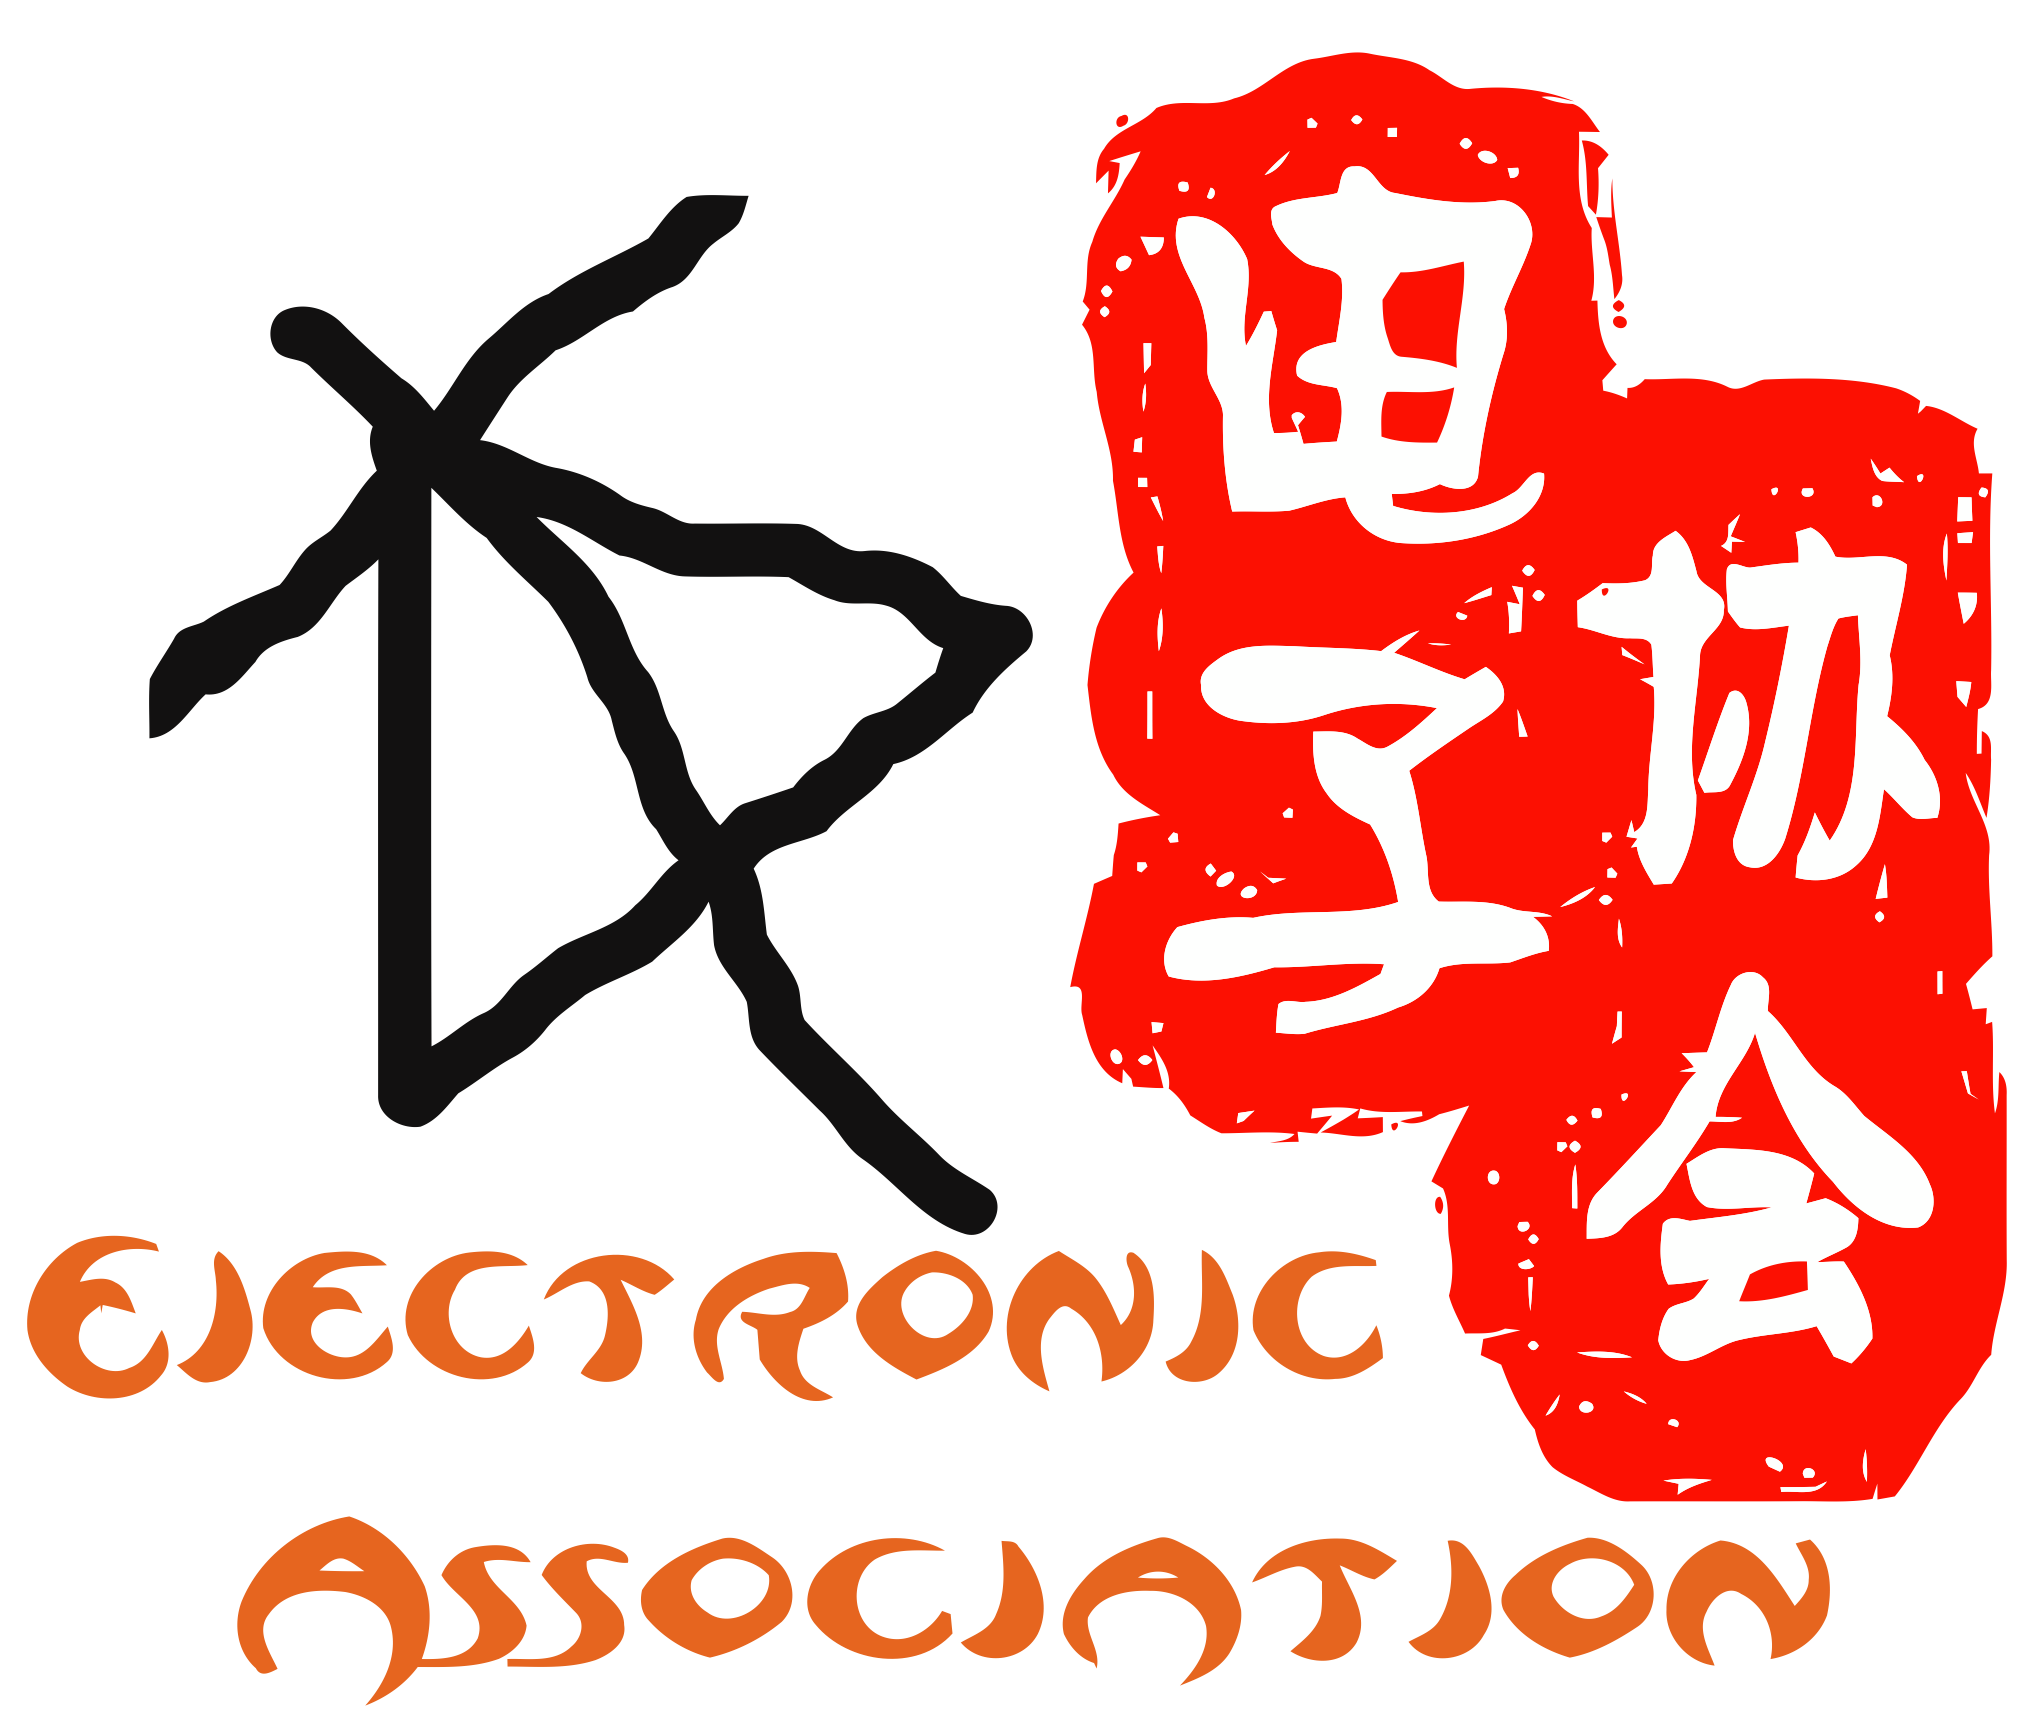 廣東工業大學華立學院電子協會